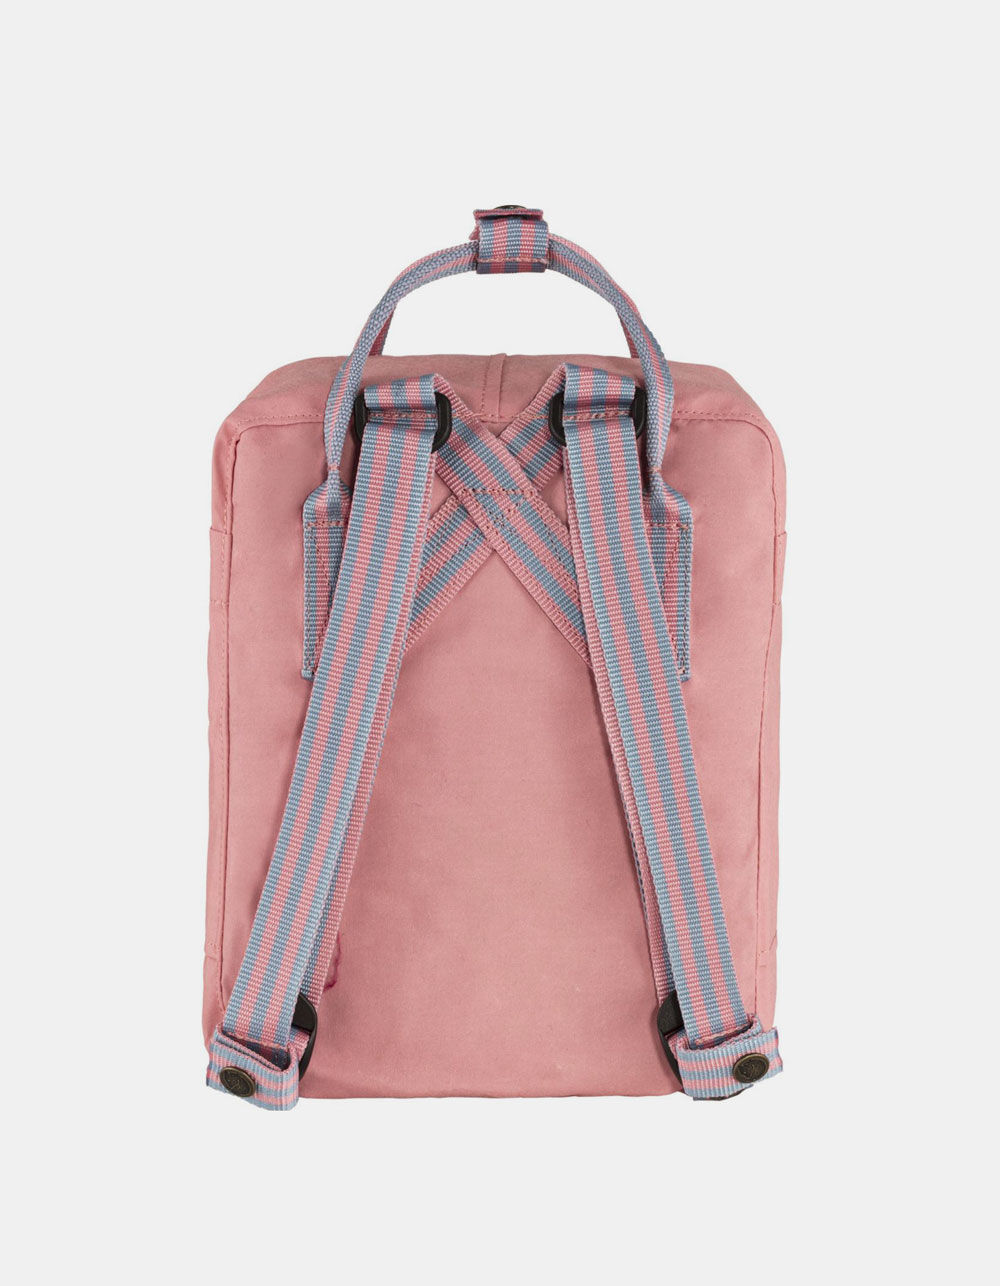 forligsmanden Guggenheim Museum håndjern FJALLRAVEN Kanken Pink Mini Backpack - PINK | Tillys